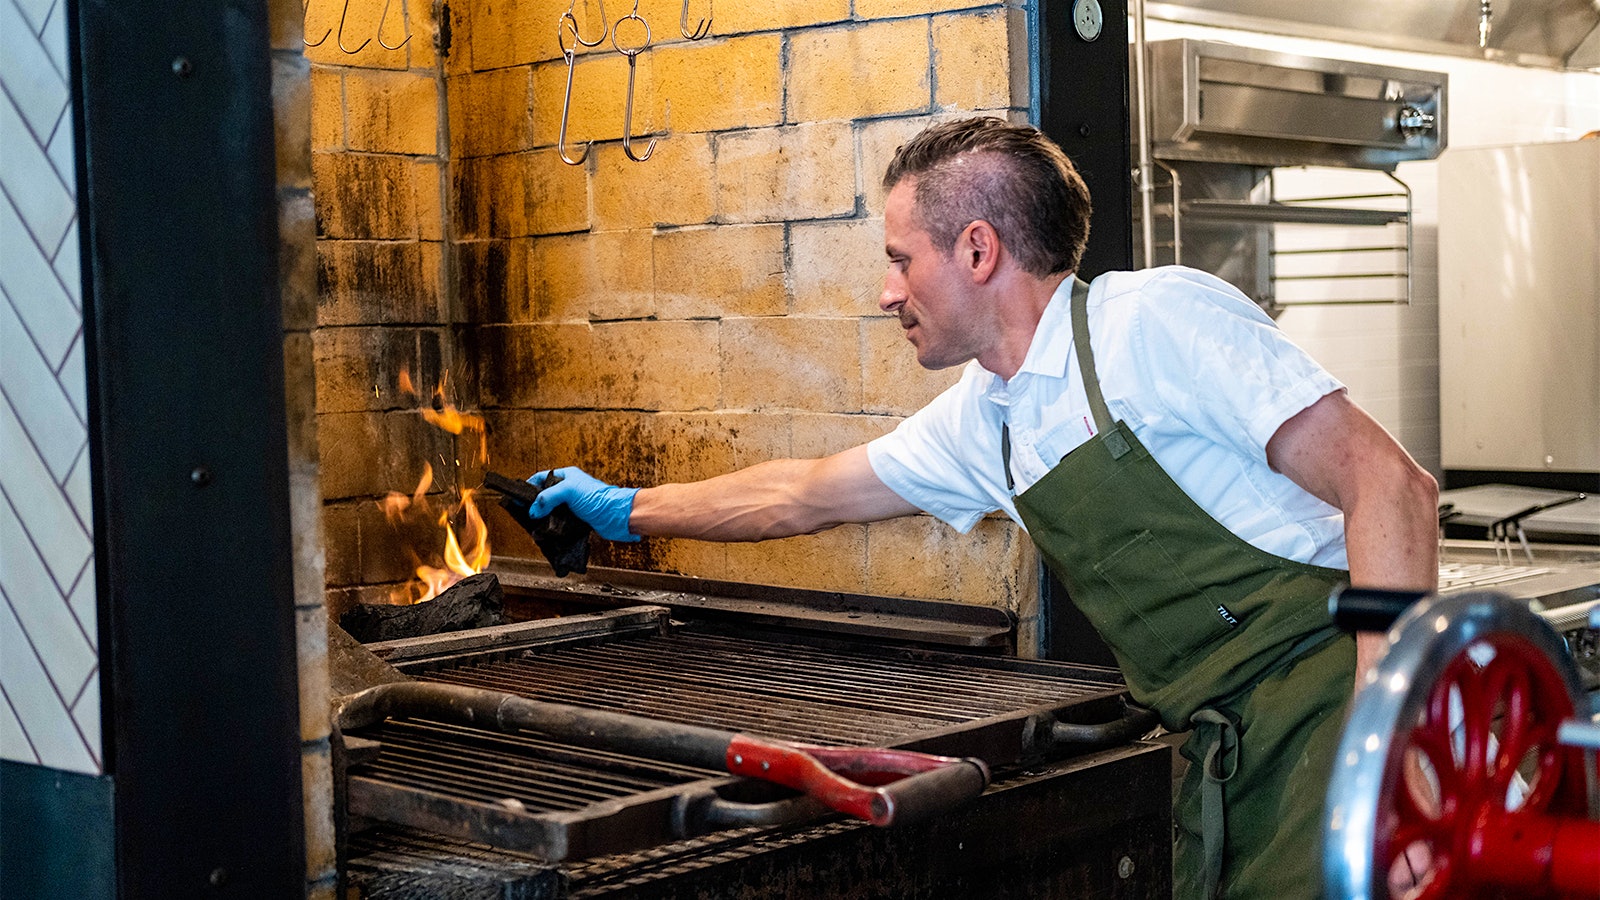  Chef Matthew Accarrino working at Mattin's charcoal oven